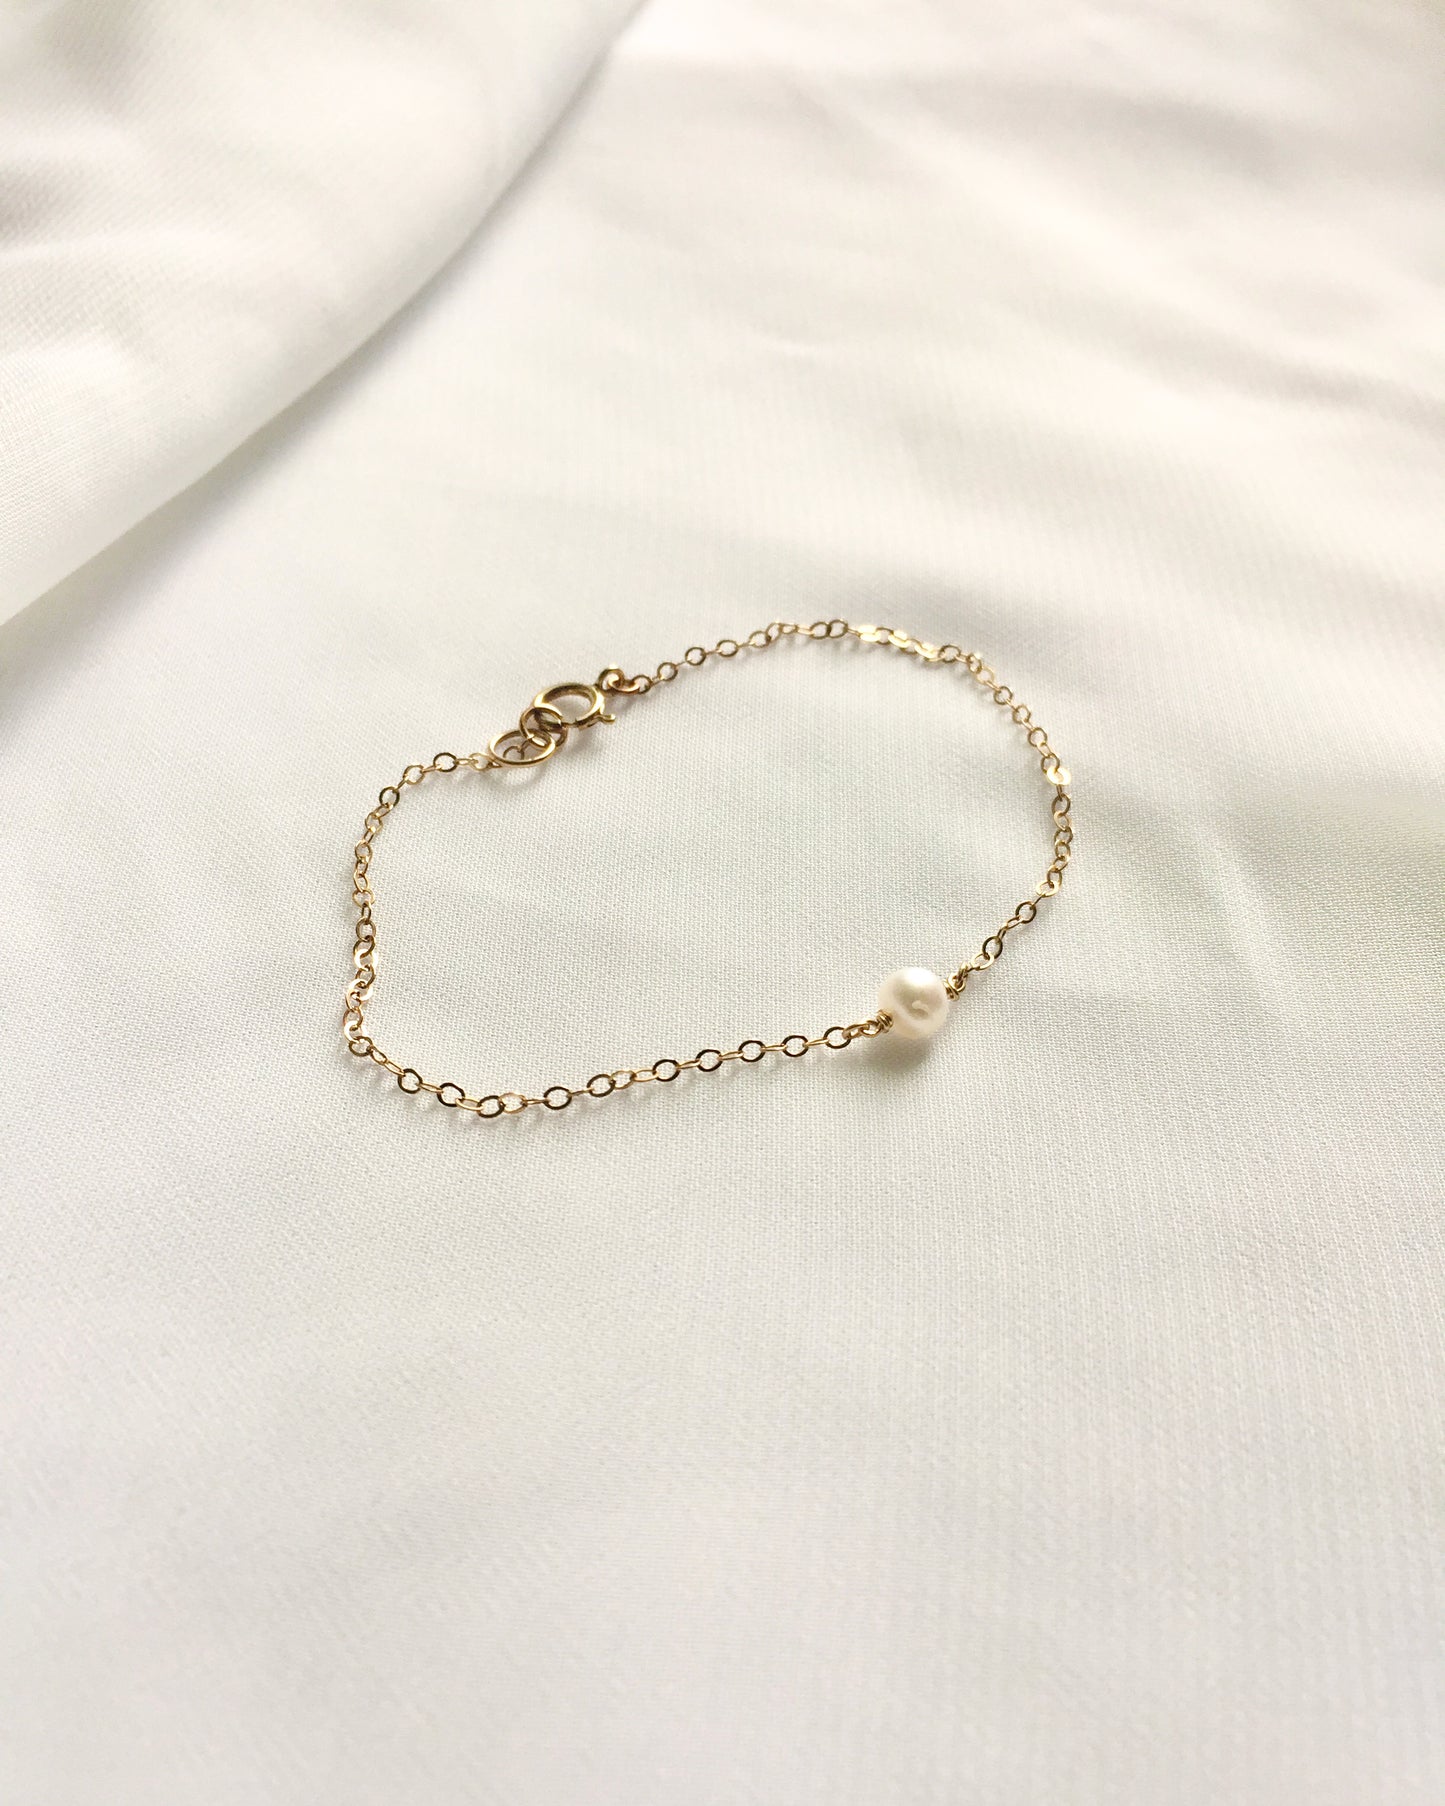 Small Freshwater Pearl Bracelet | Dainty Freshwater Pearl Bracelet | IB Jewelry